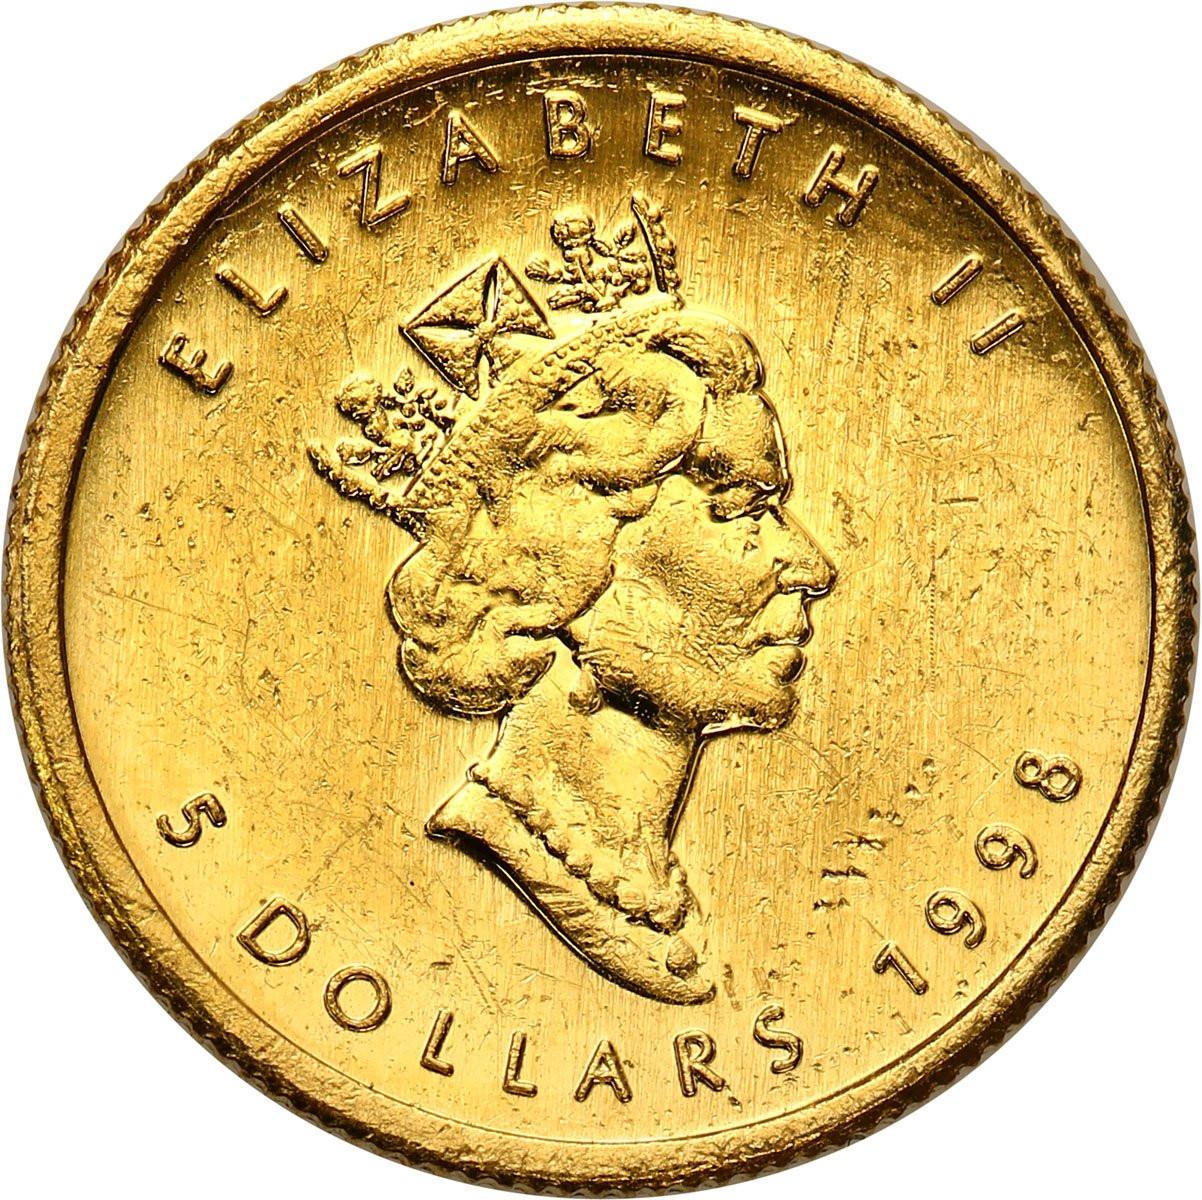 Kanada 5 dolarów 1998 liść klonowy 1/10 uncji złota